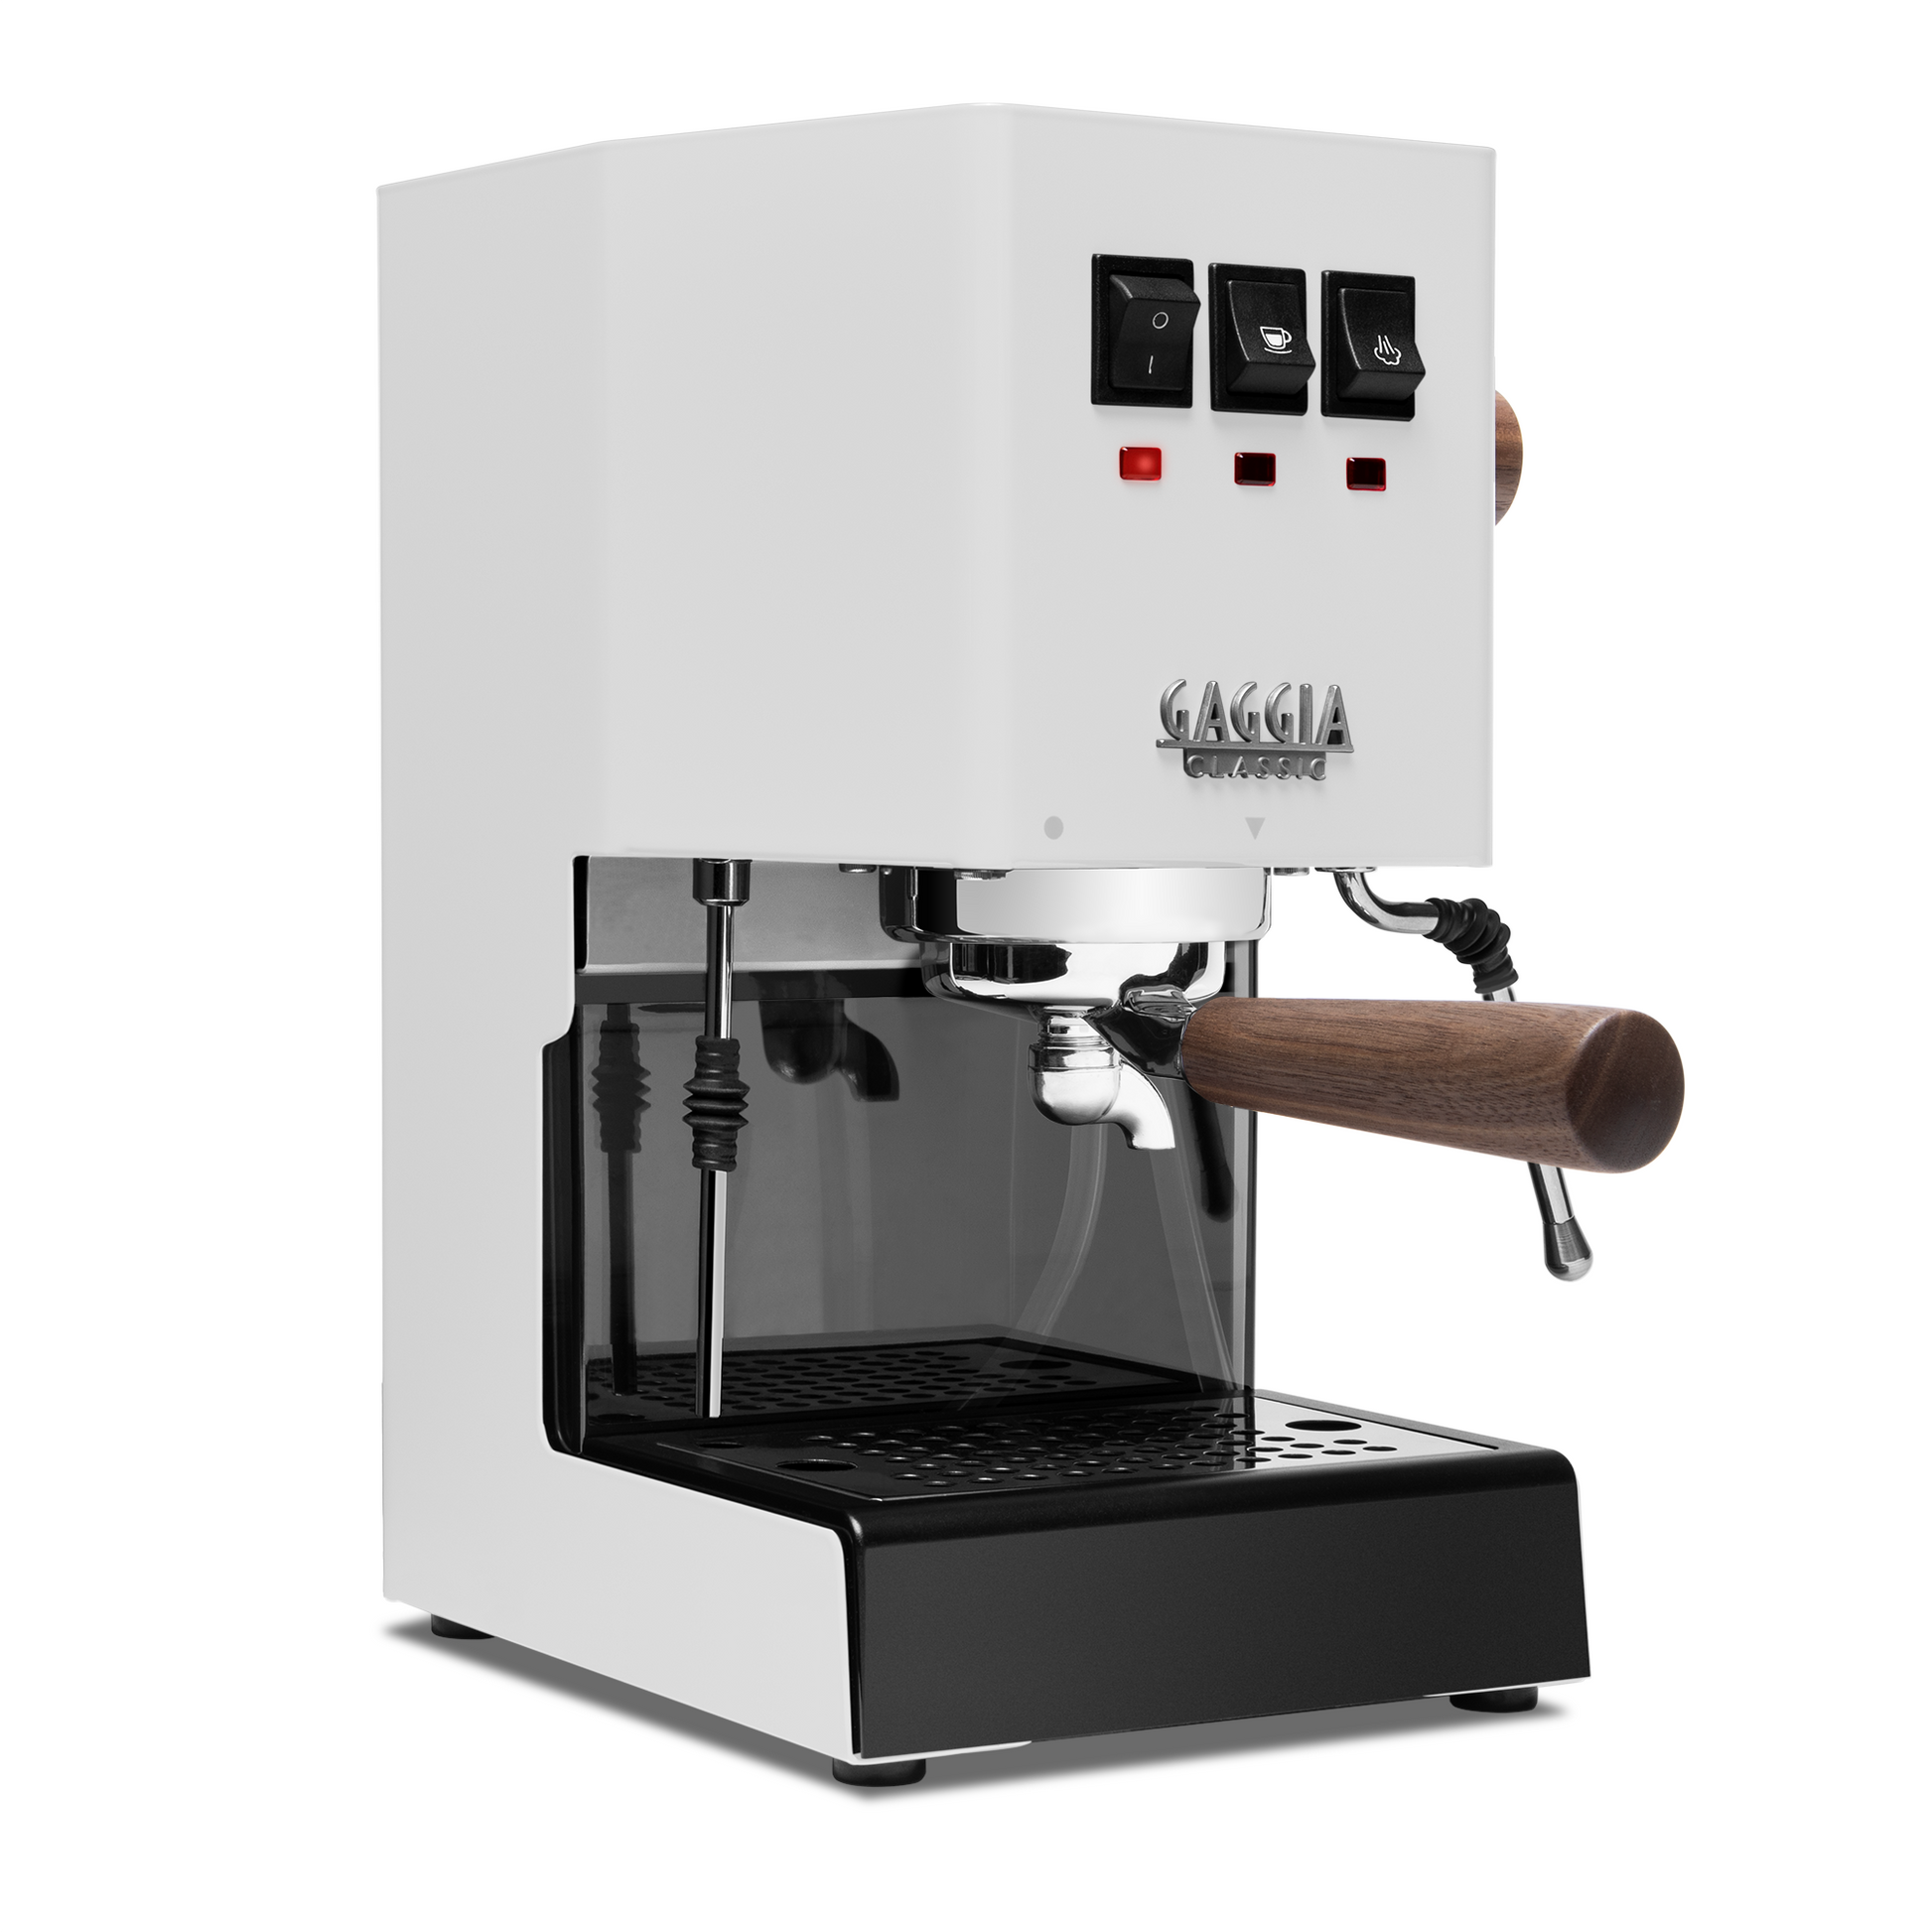 Mr. Coffee Cafe Barista Review: Entry-Level Espresso Machine